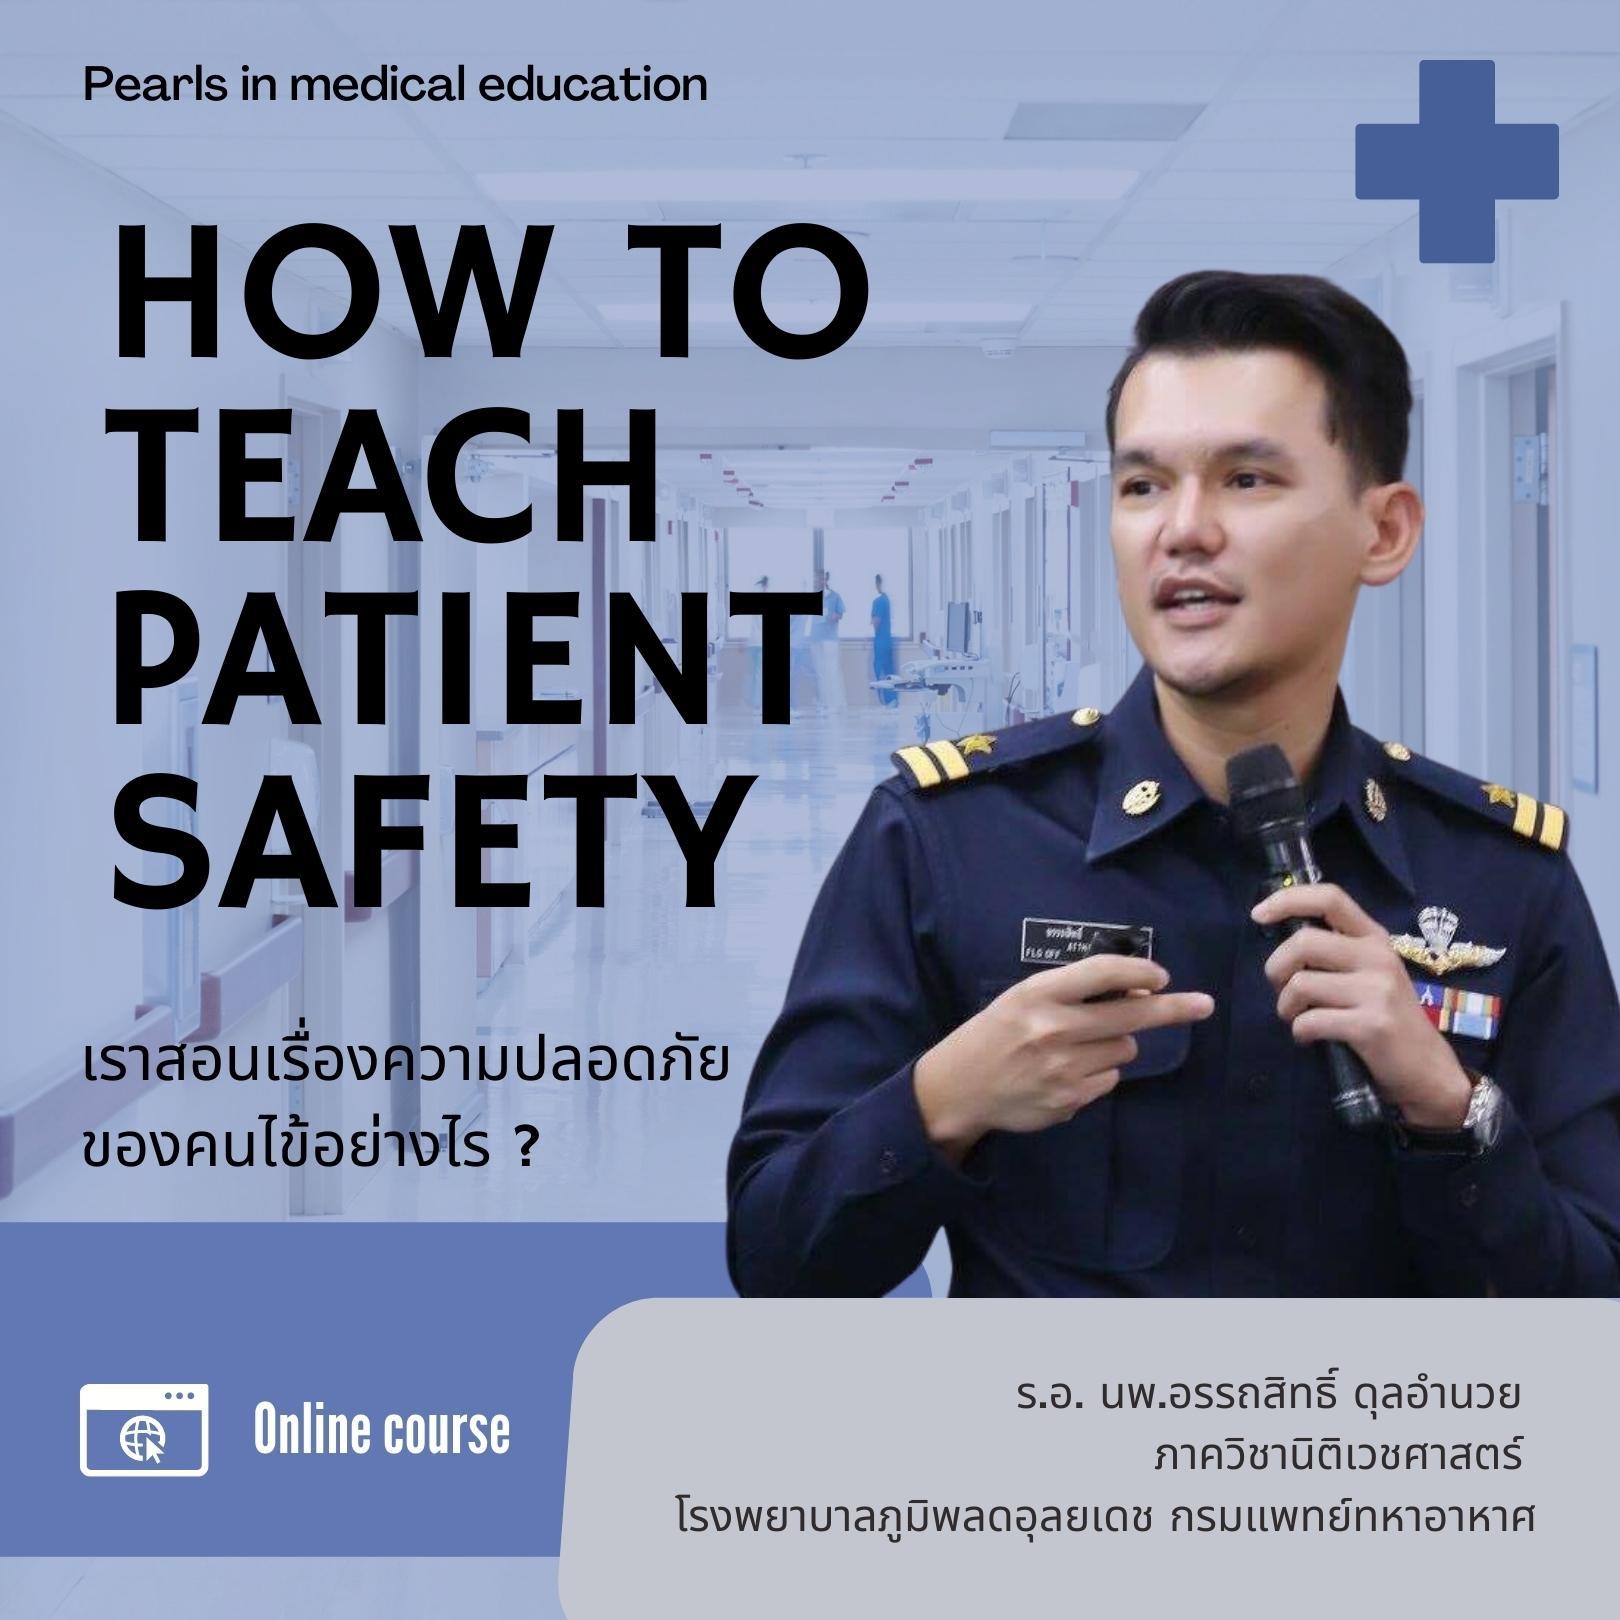 How to teach patient safety เราสอนเรื่องความปลอดภัยของคนไข้อย่างไร